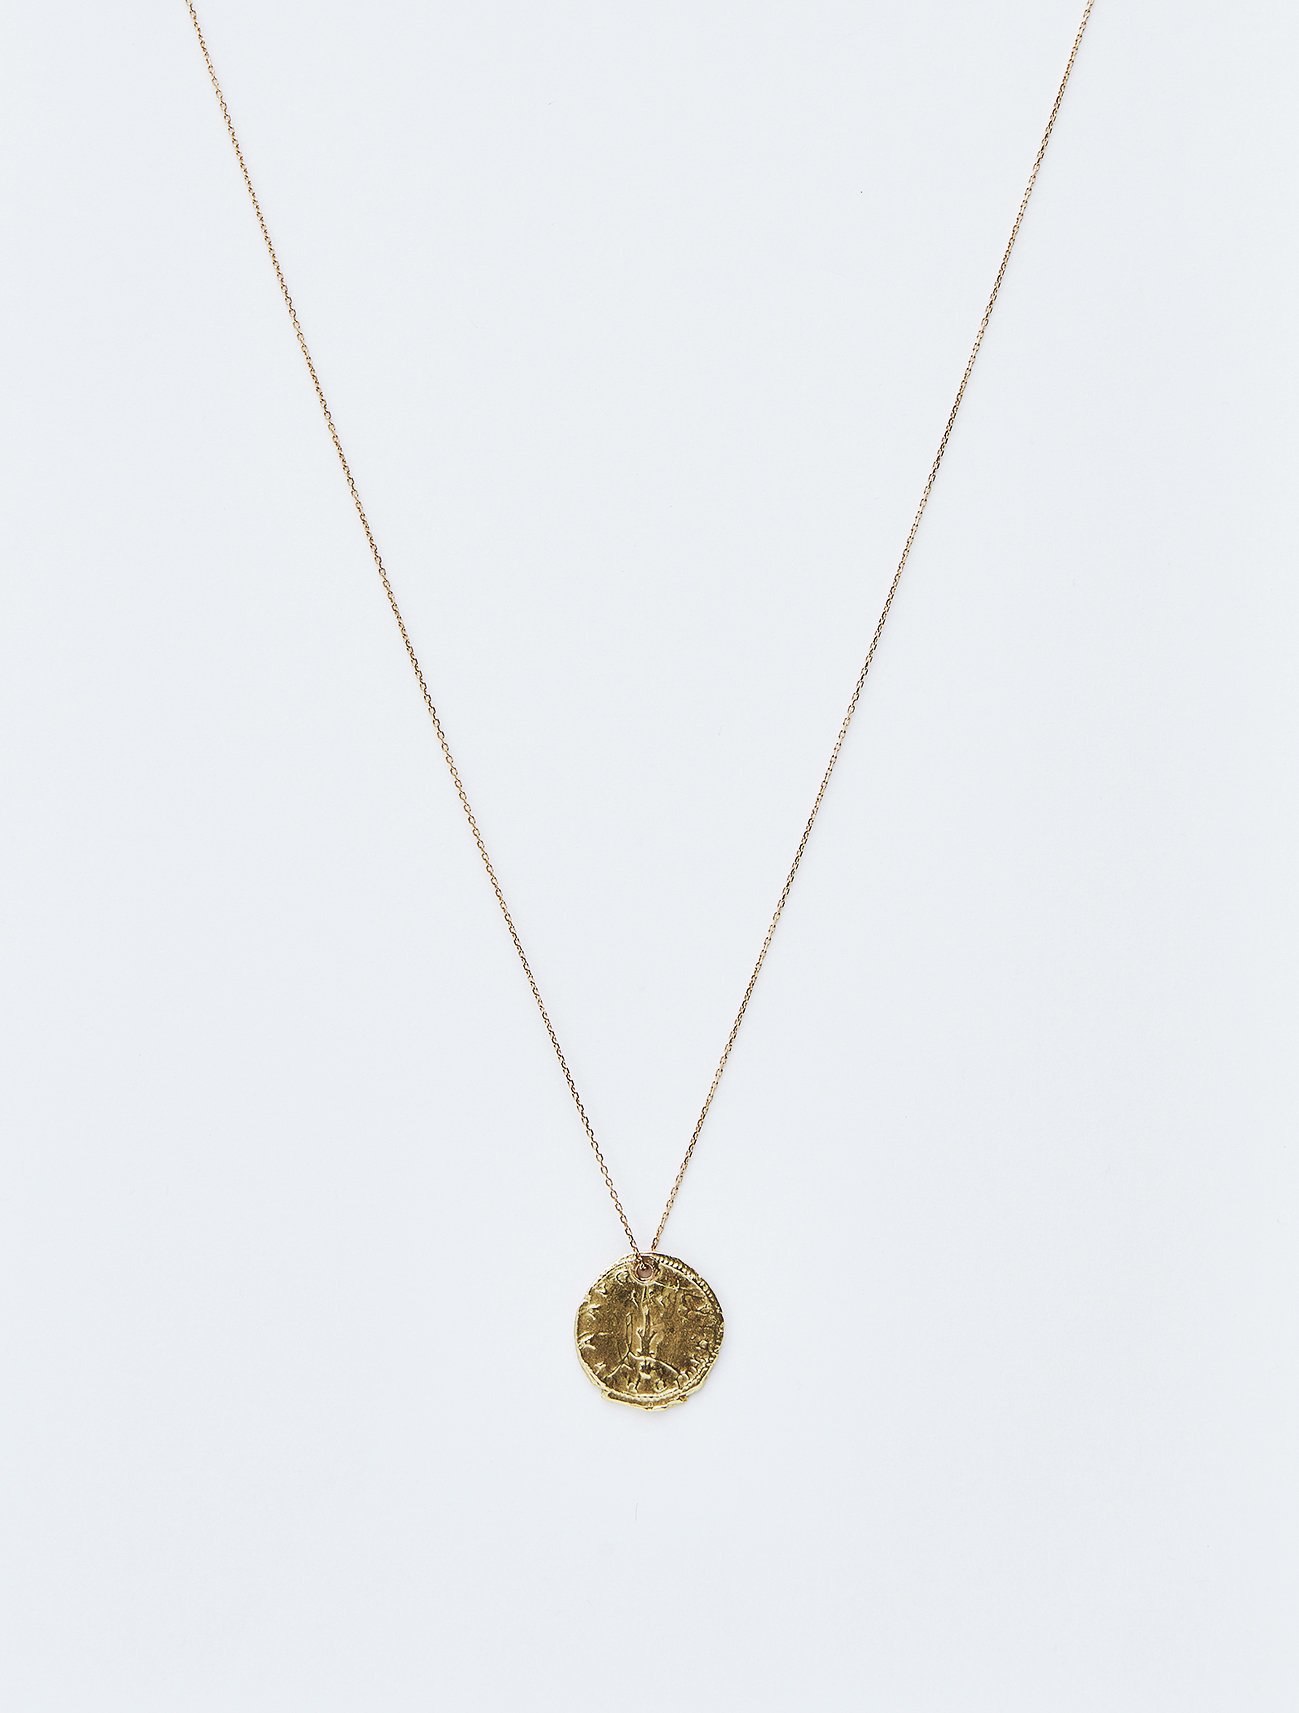 HELIOS / Roman coin necklace / ANTONINIANO